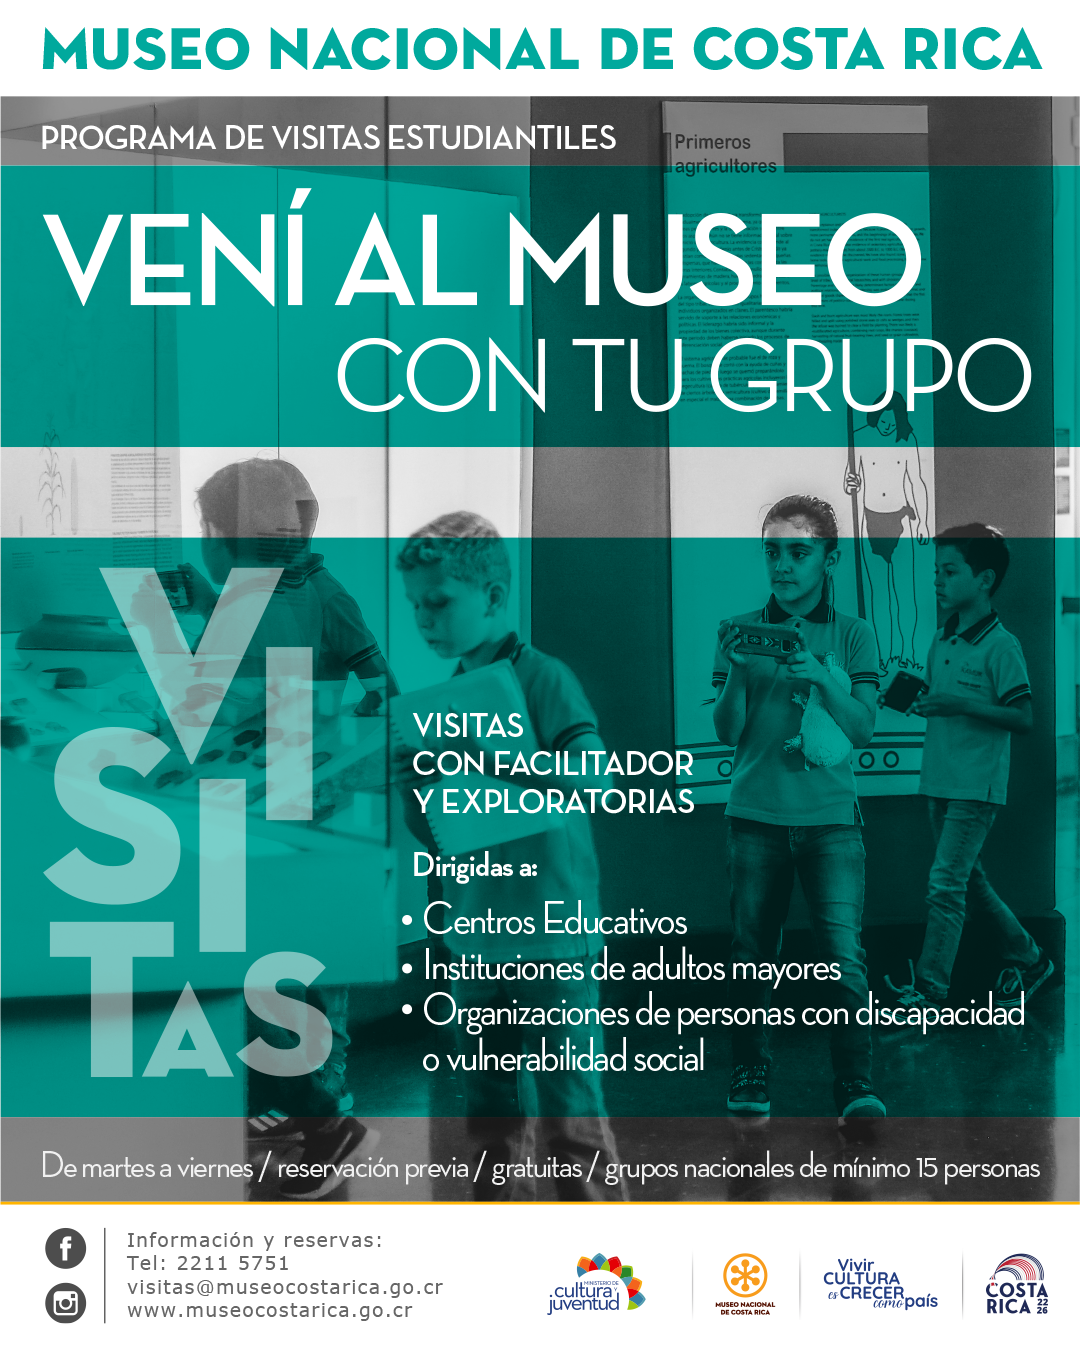 Programa de Visitas Estudiantiles del Museo Nacional de Costa Rica